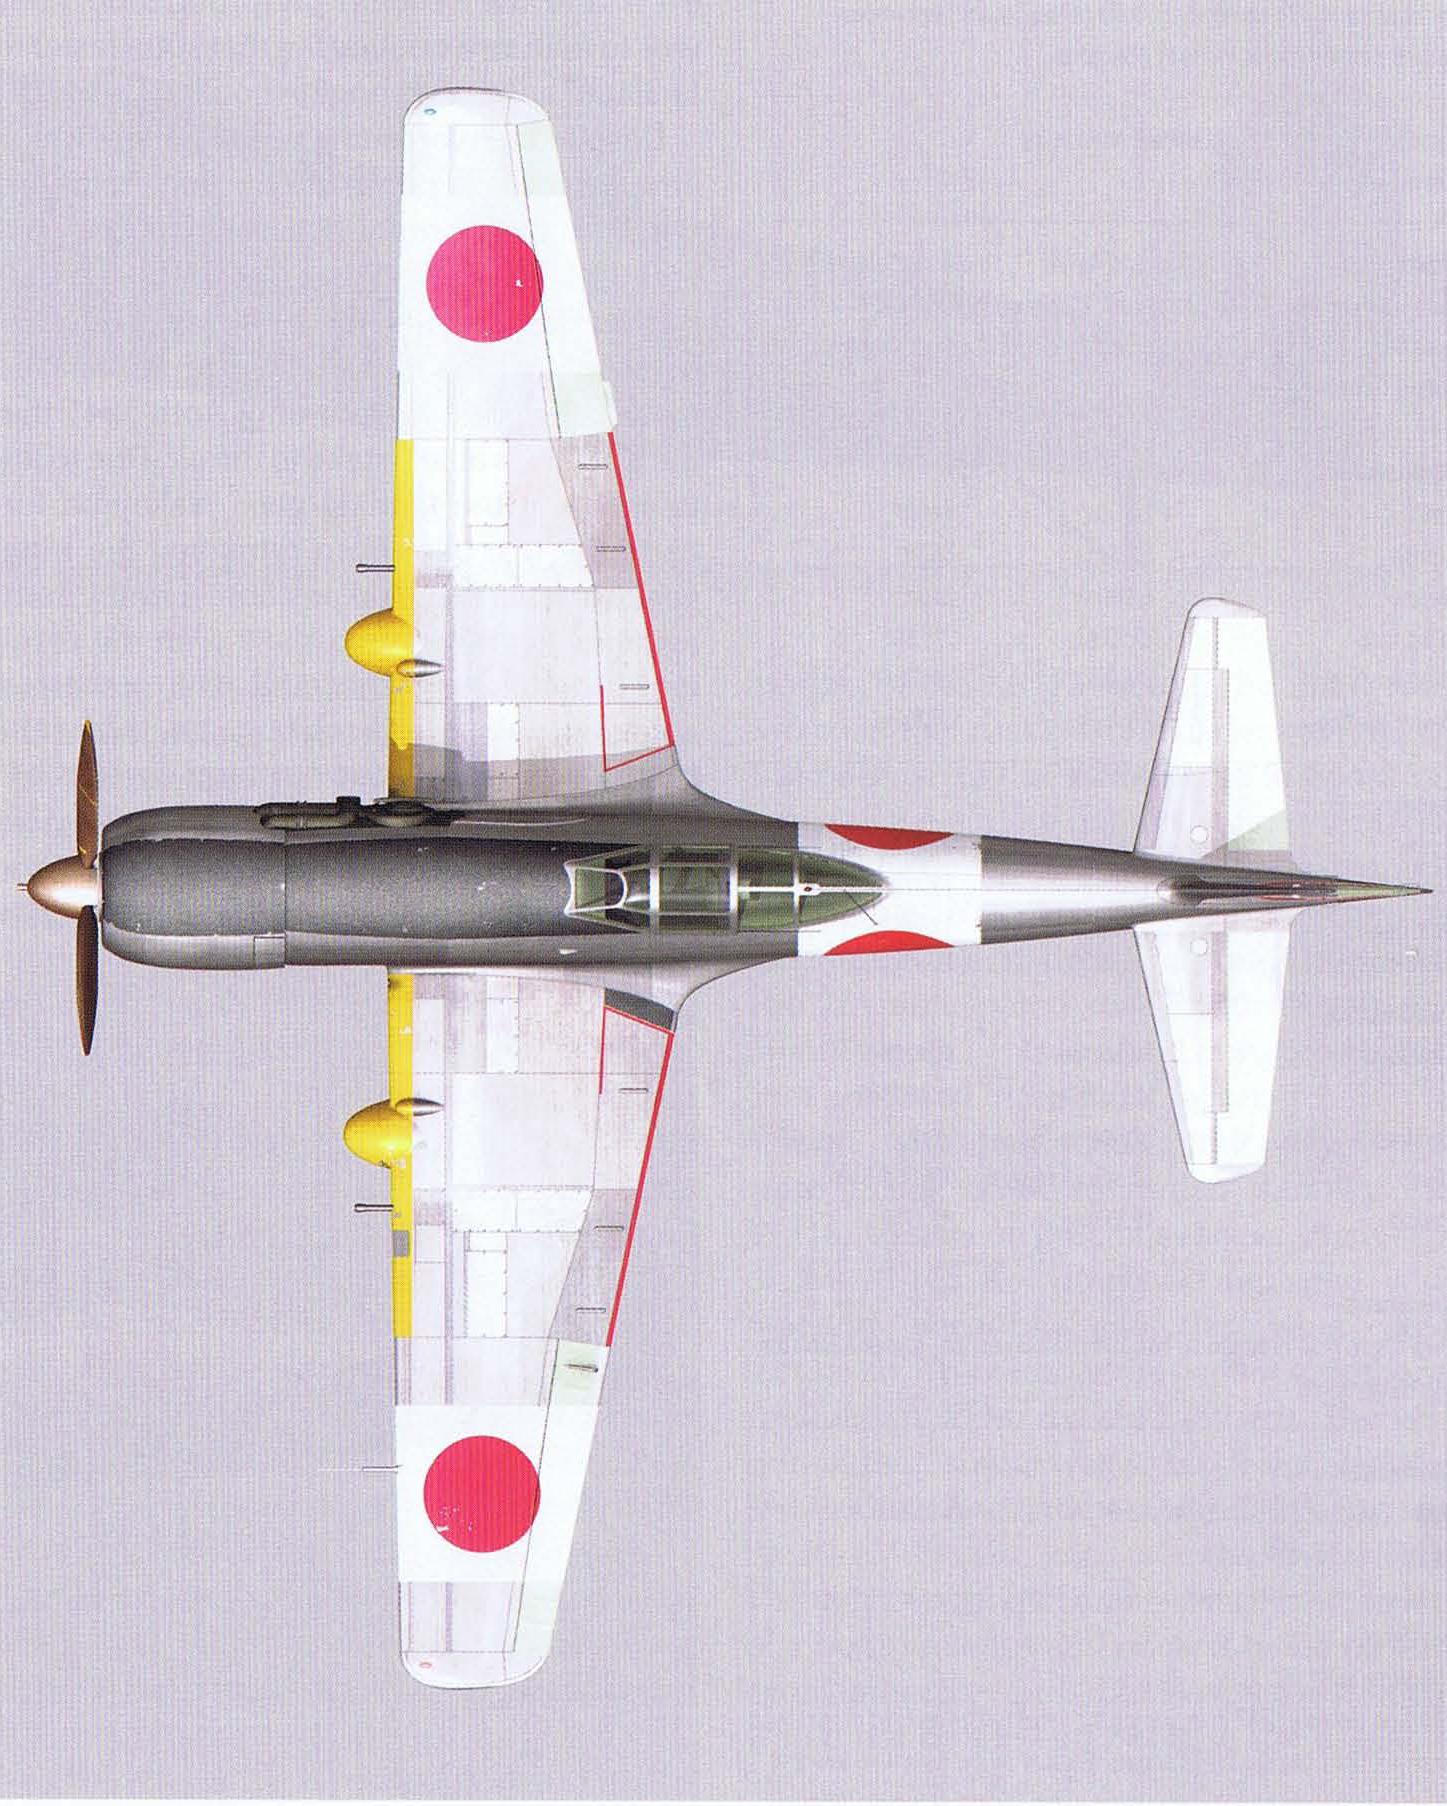 Высотный истребитель 中島 キ87 (Nakajima Ki-87). Япония